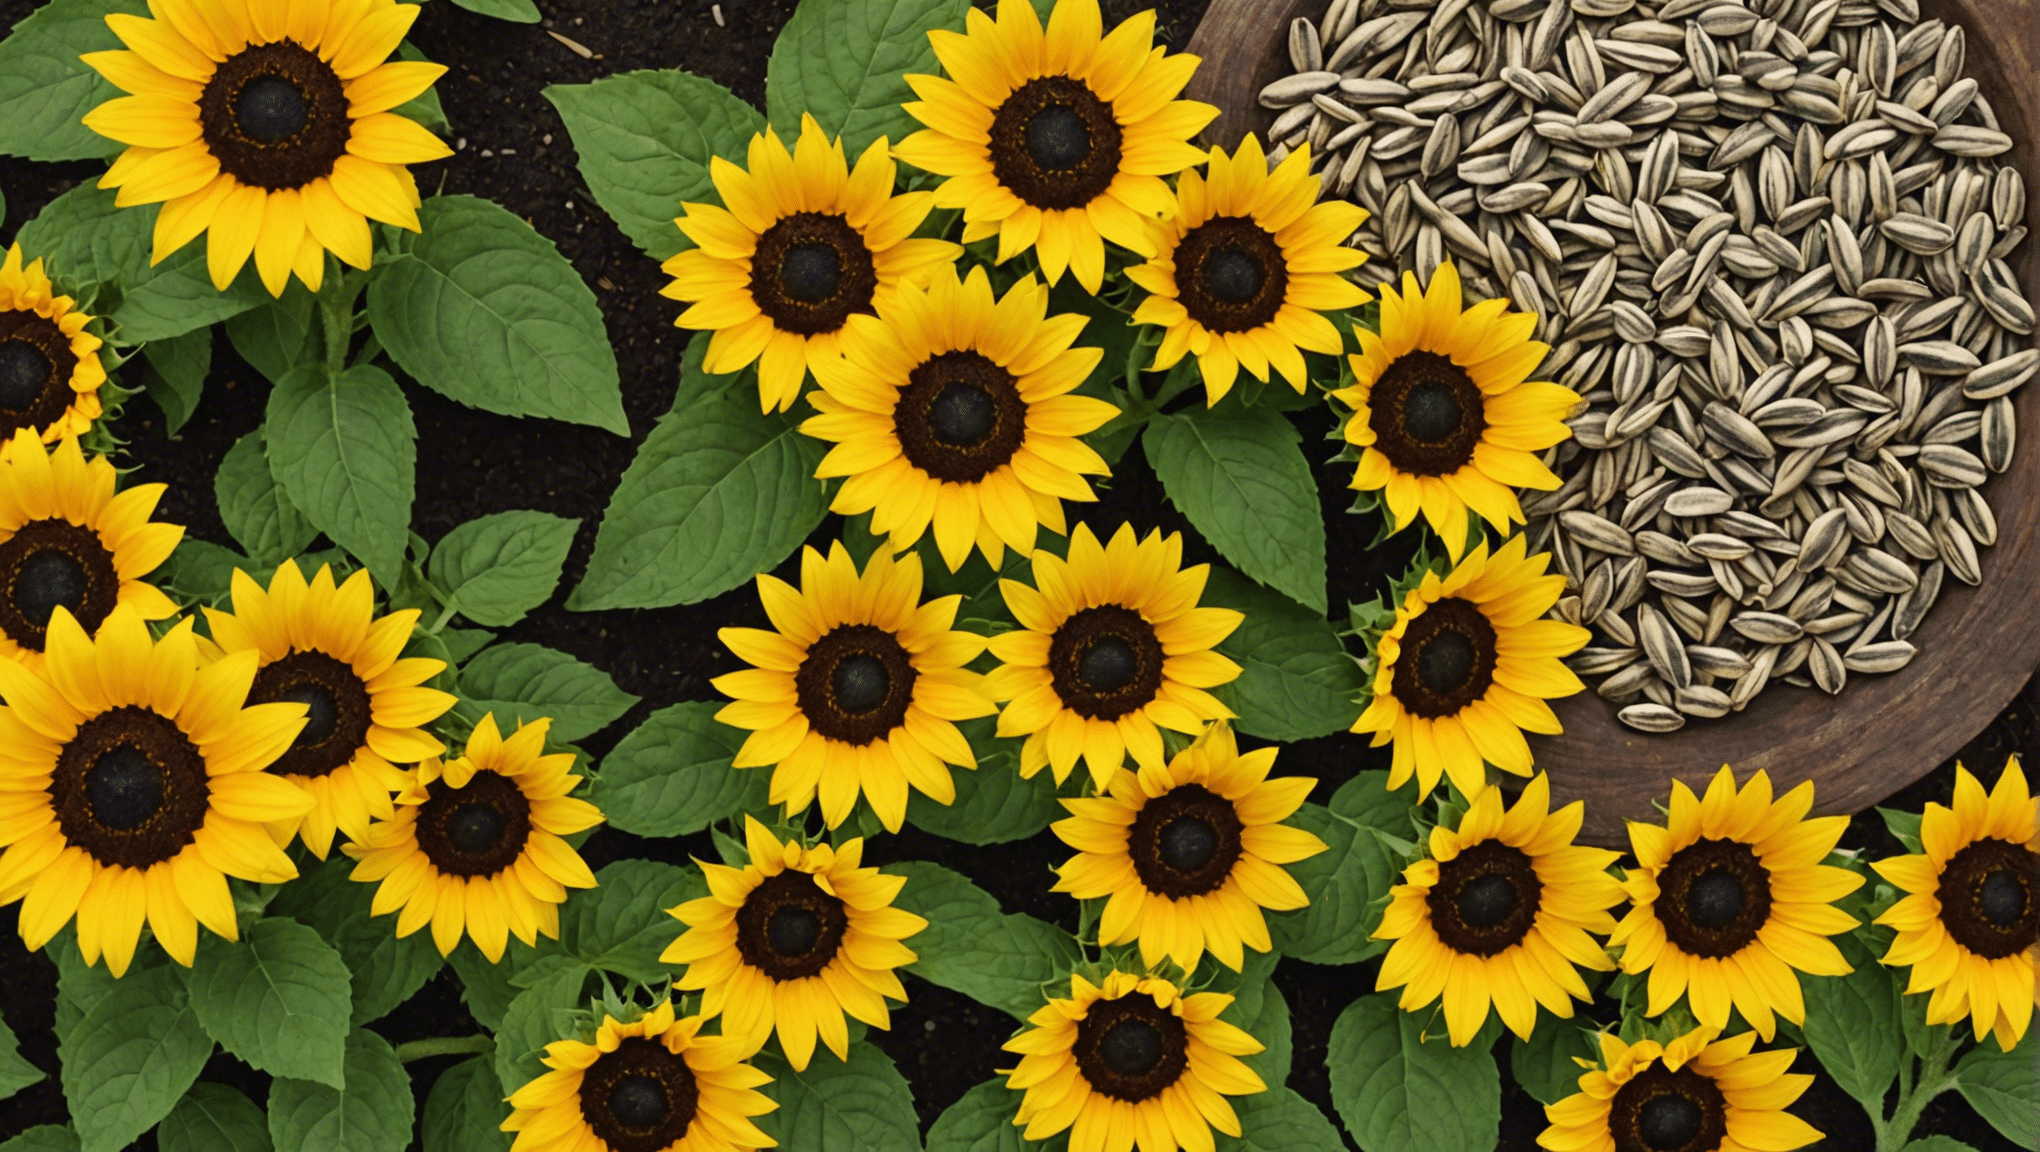 Entdecken Sie die Gründe für die wachsende Beliebtheit von Chinook-Sonnenblumenkernen als Snack. Finden Sie heraus, was sie auszeichnet und warum sie von den Verbrauchern immer mehr bevorzugt werden.